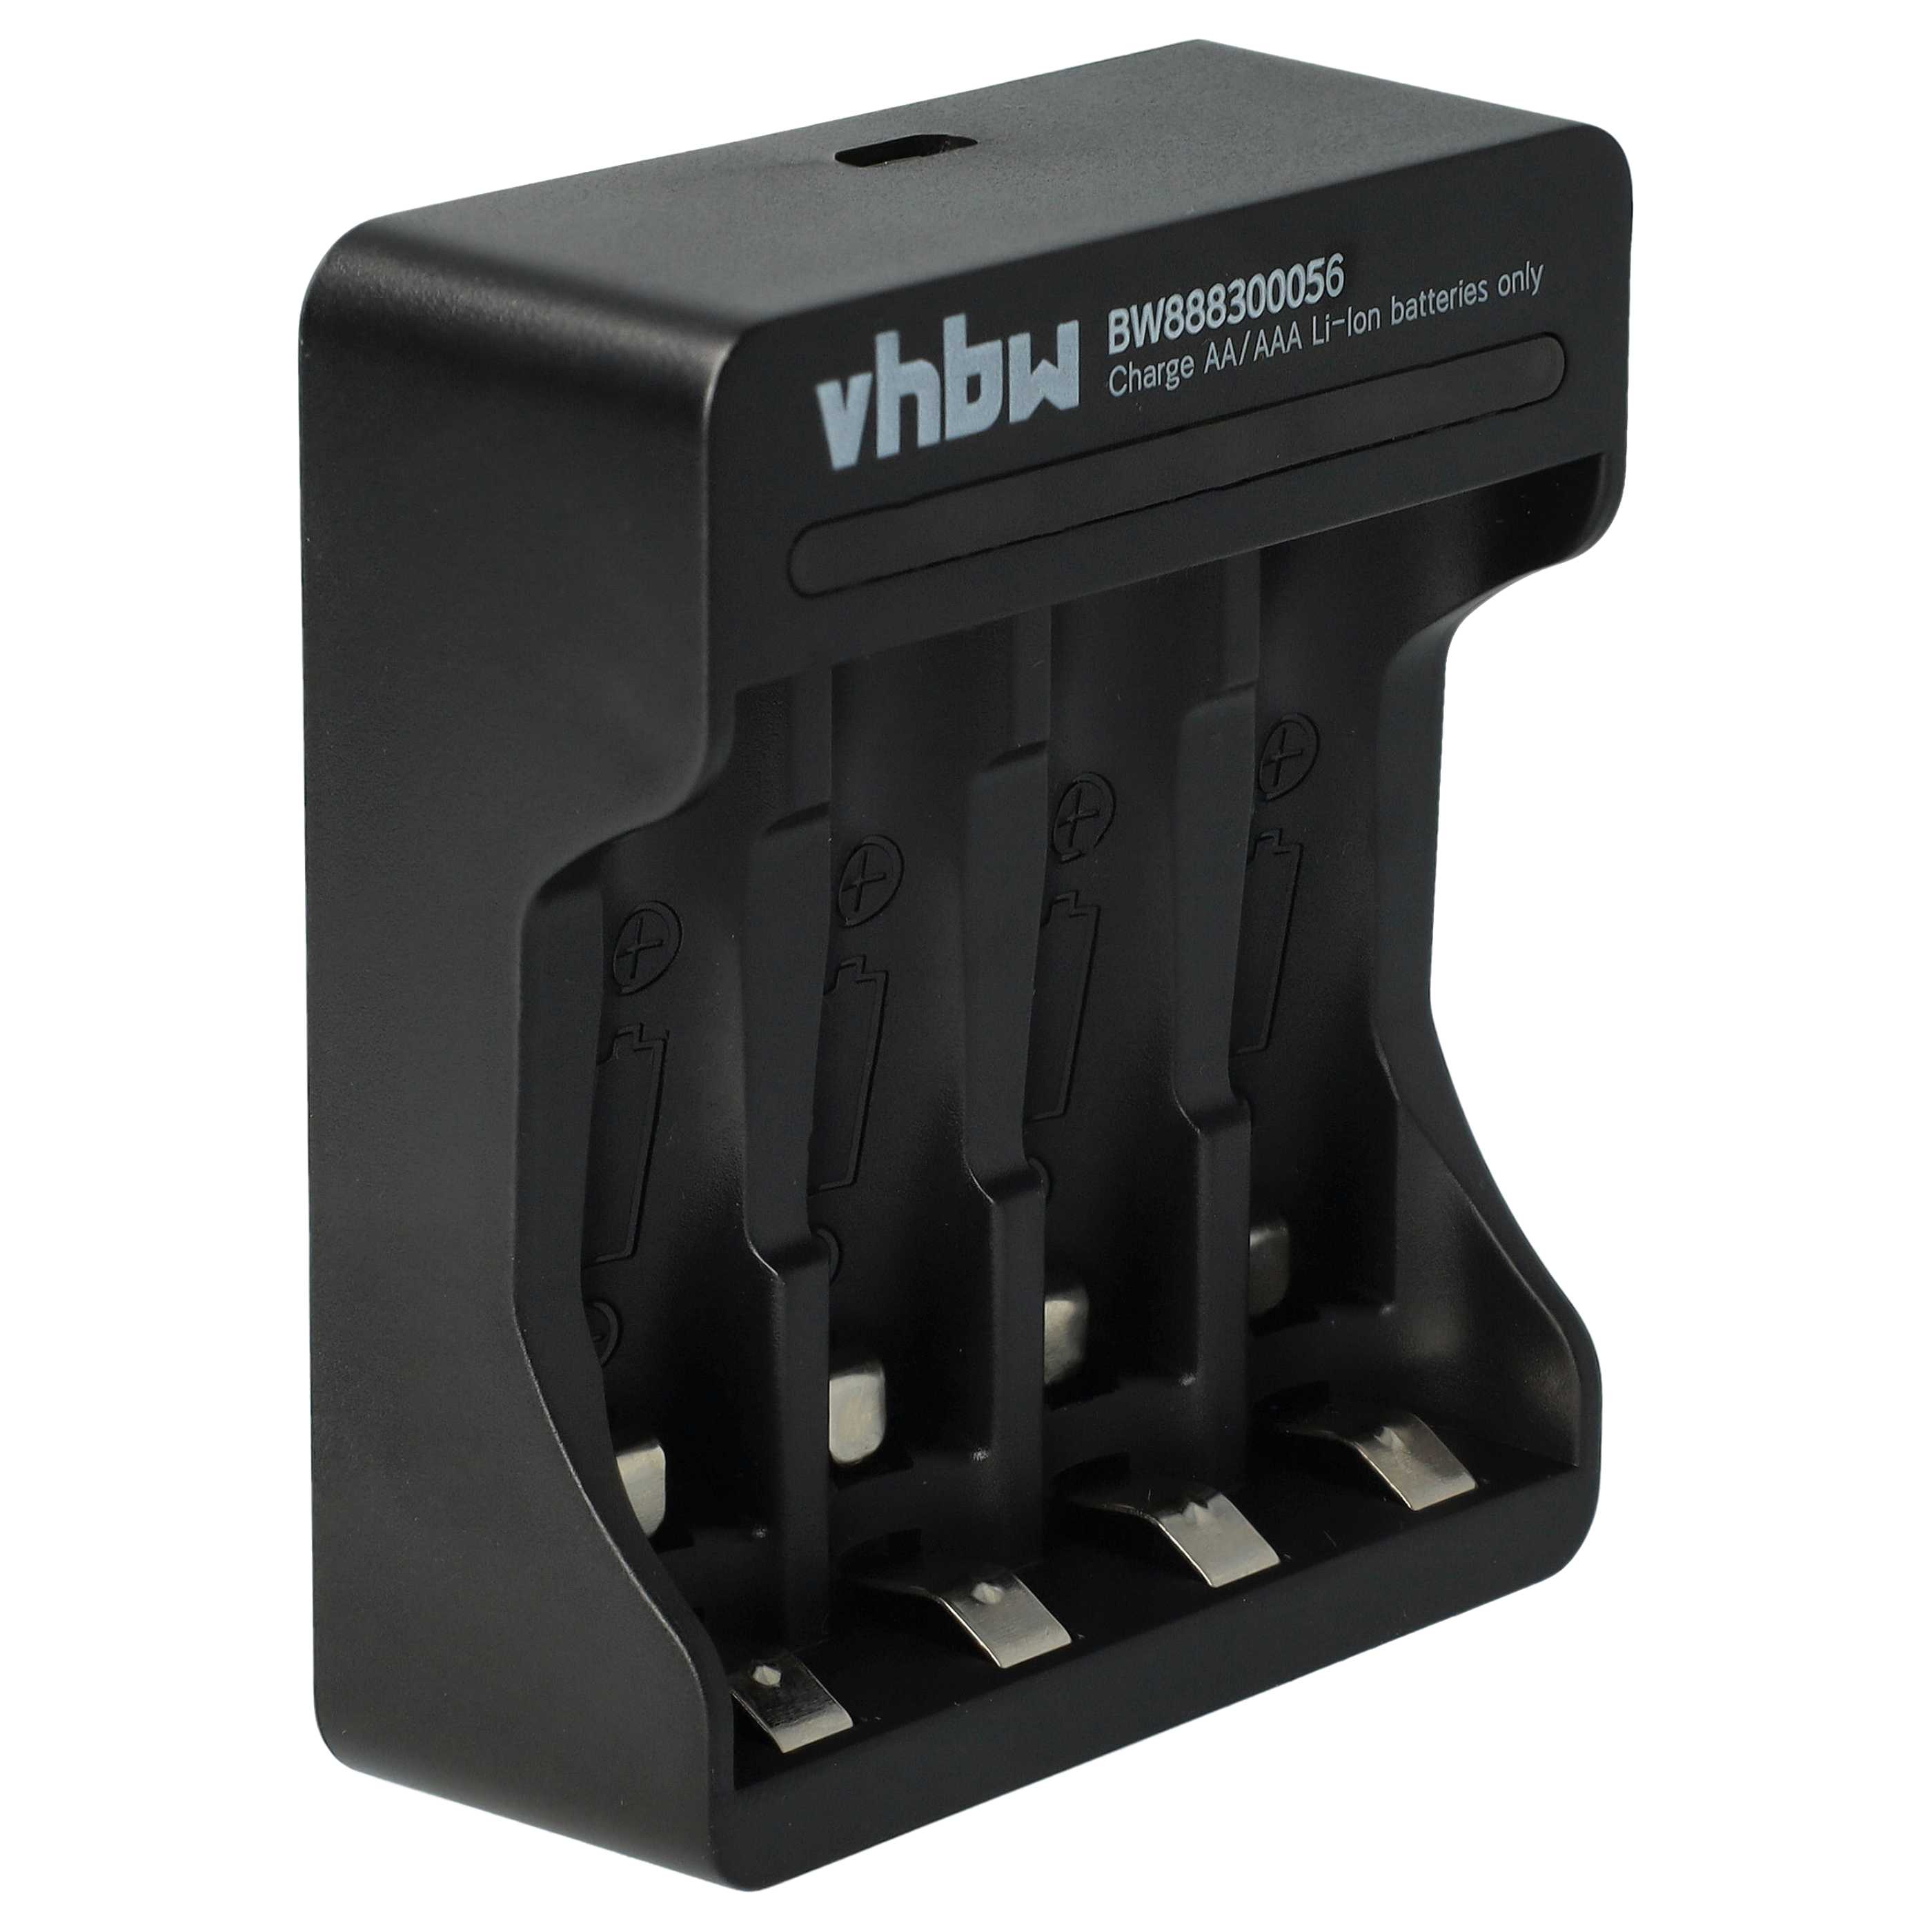 Cargador micro-USB 4 compartimentos para baterías, celdas AA, AAA Li-Ion 